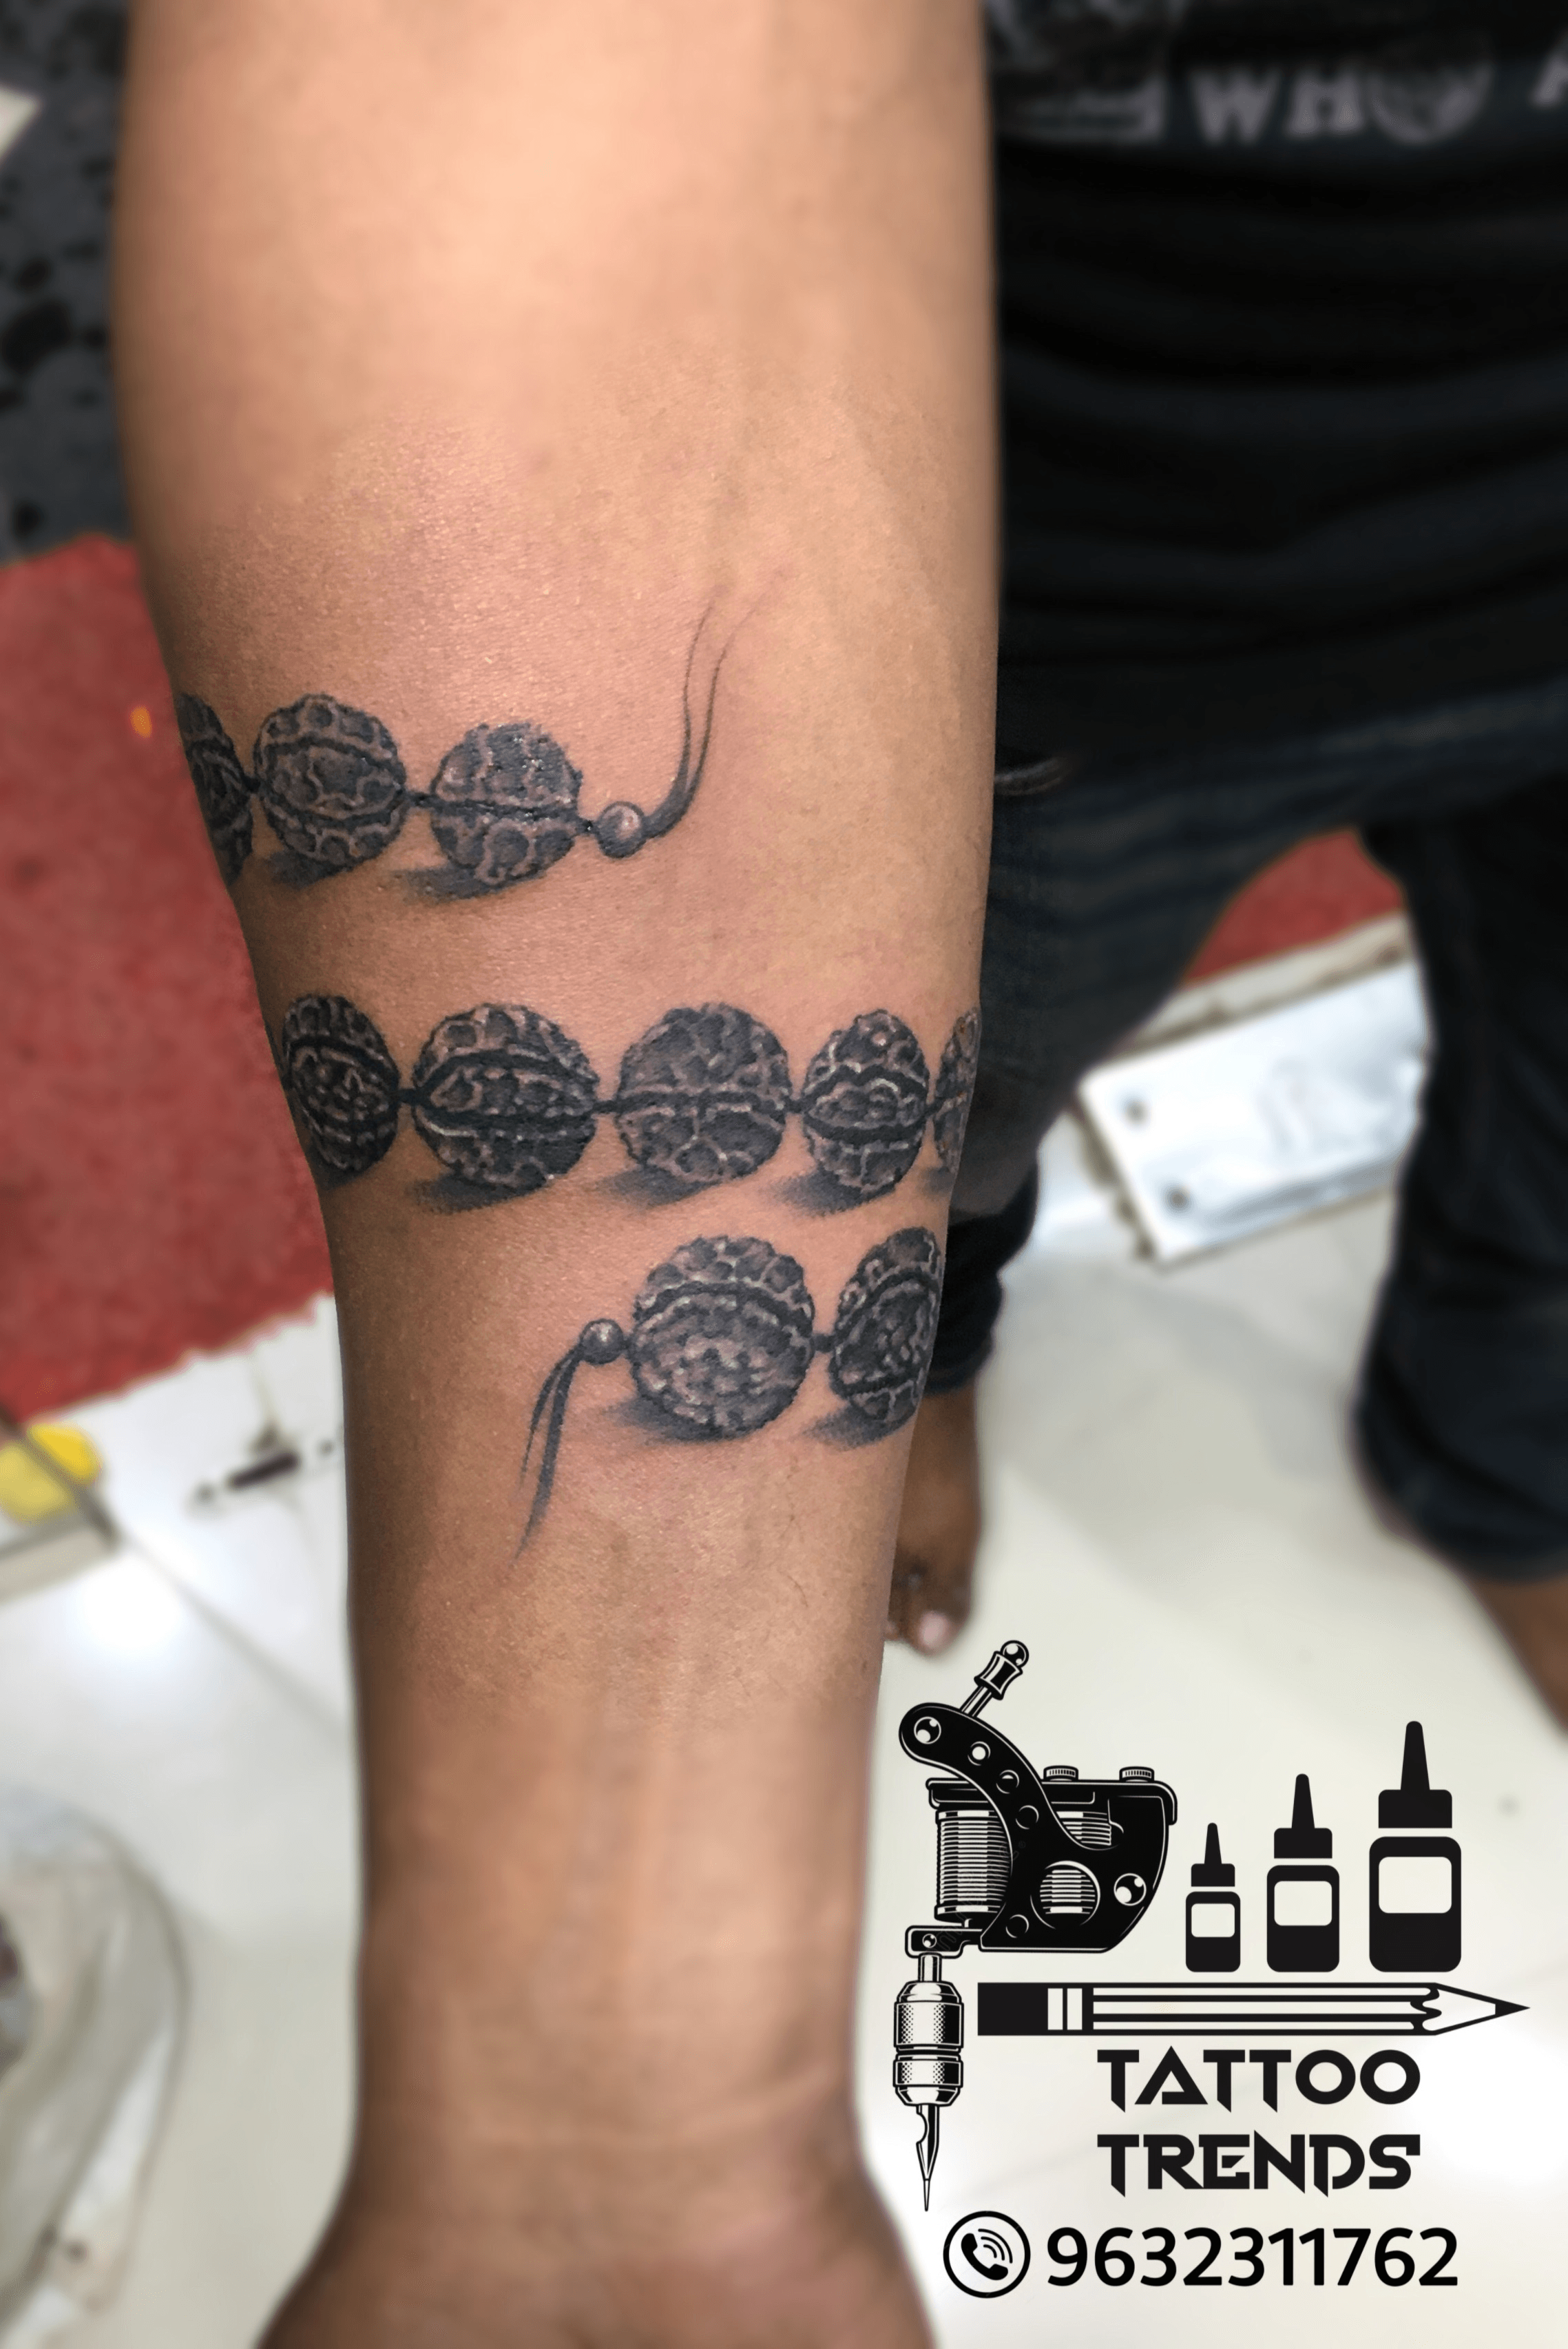 Rudraksha Armband Tattoo by Javagreeen on DeviantArt